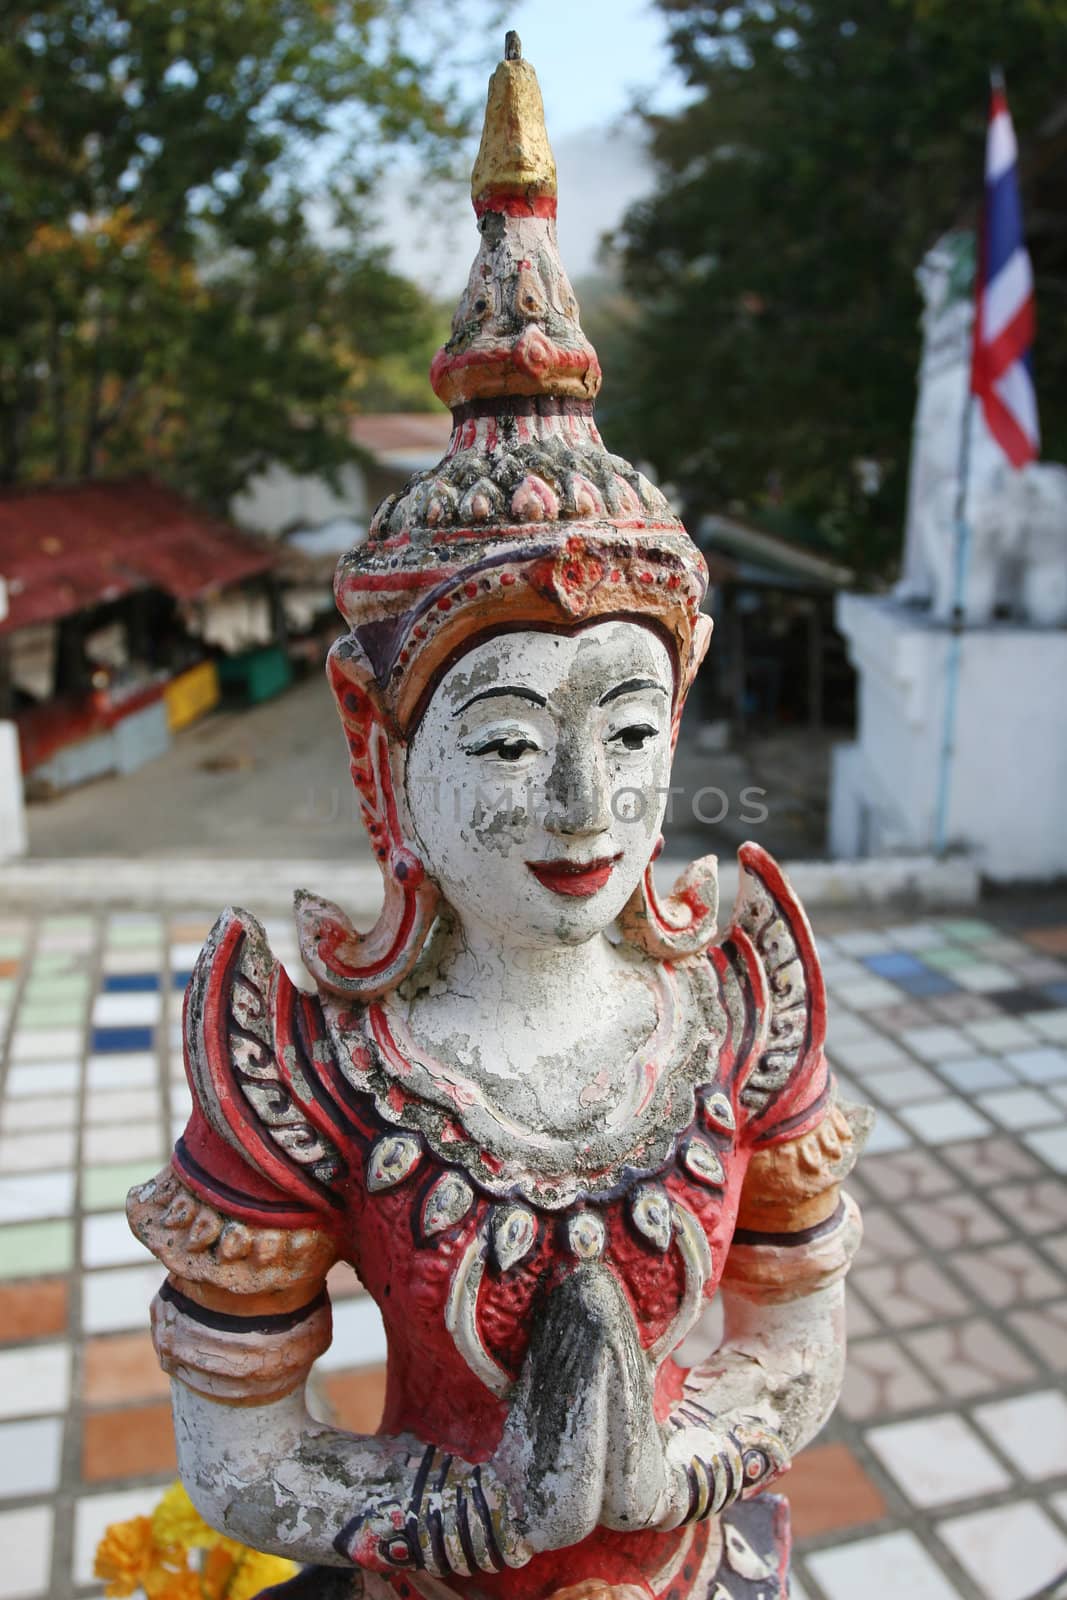 Thai Statue Art